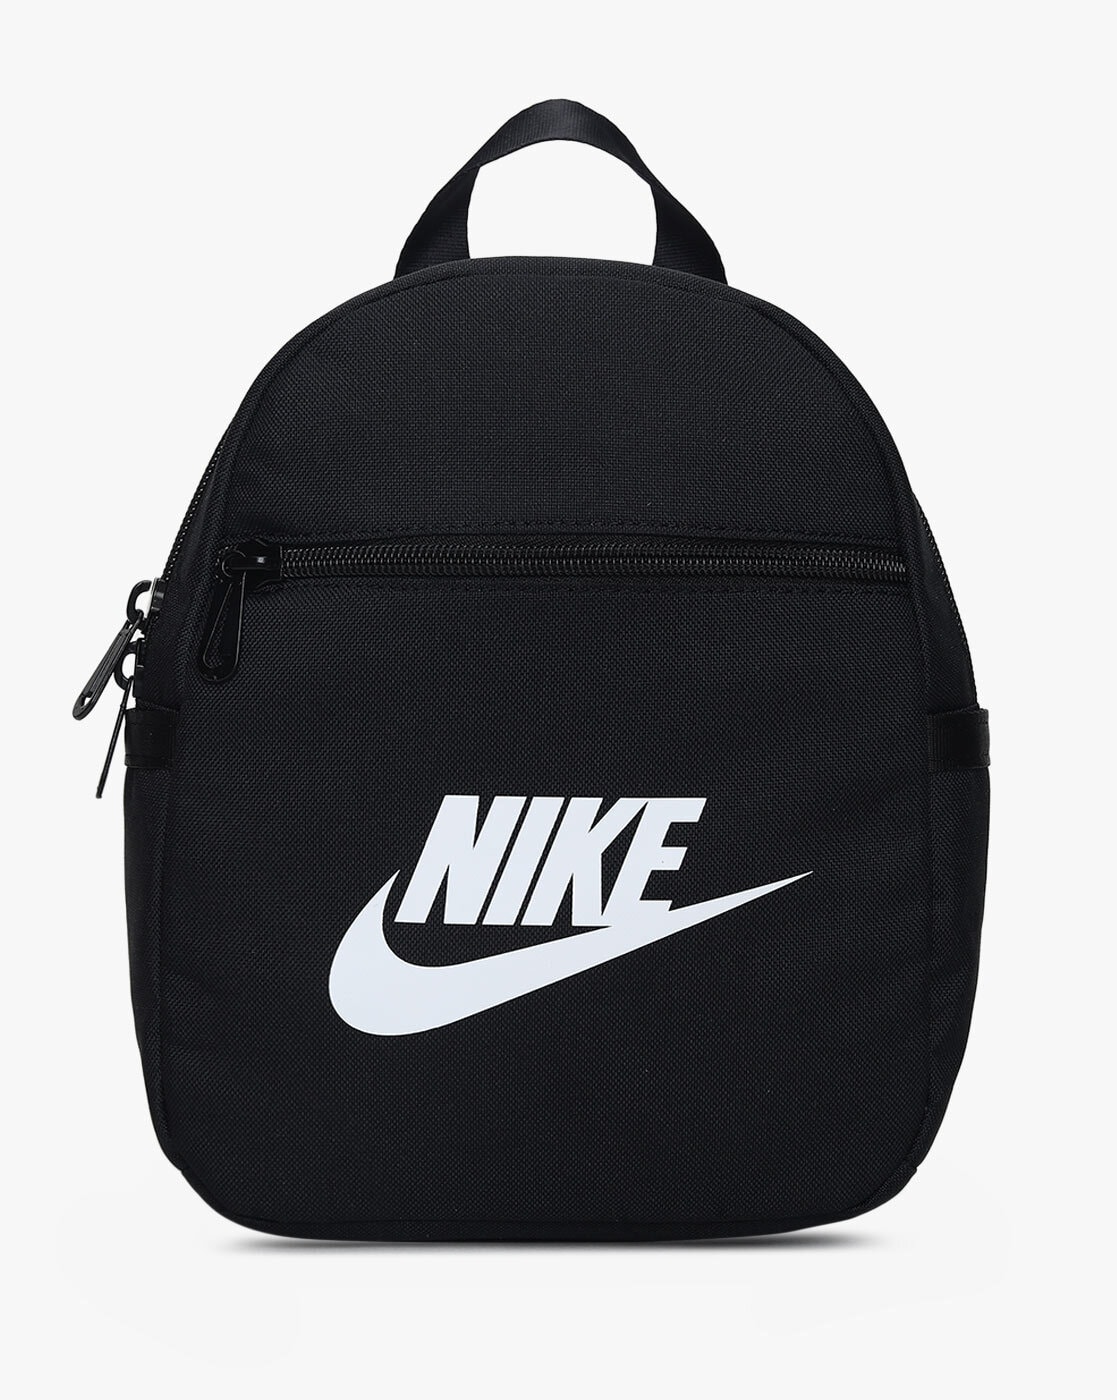 Men Mens Nike Bags - Buy Men Mens Nike Bags online in India